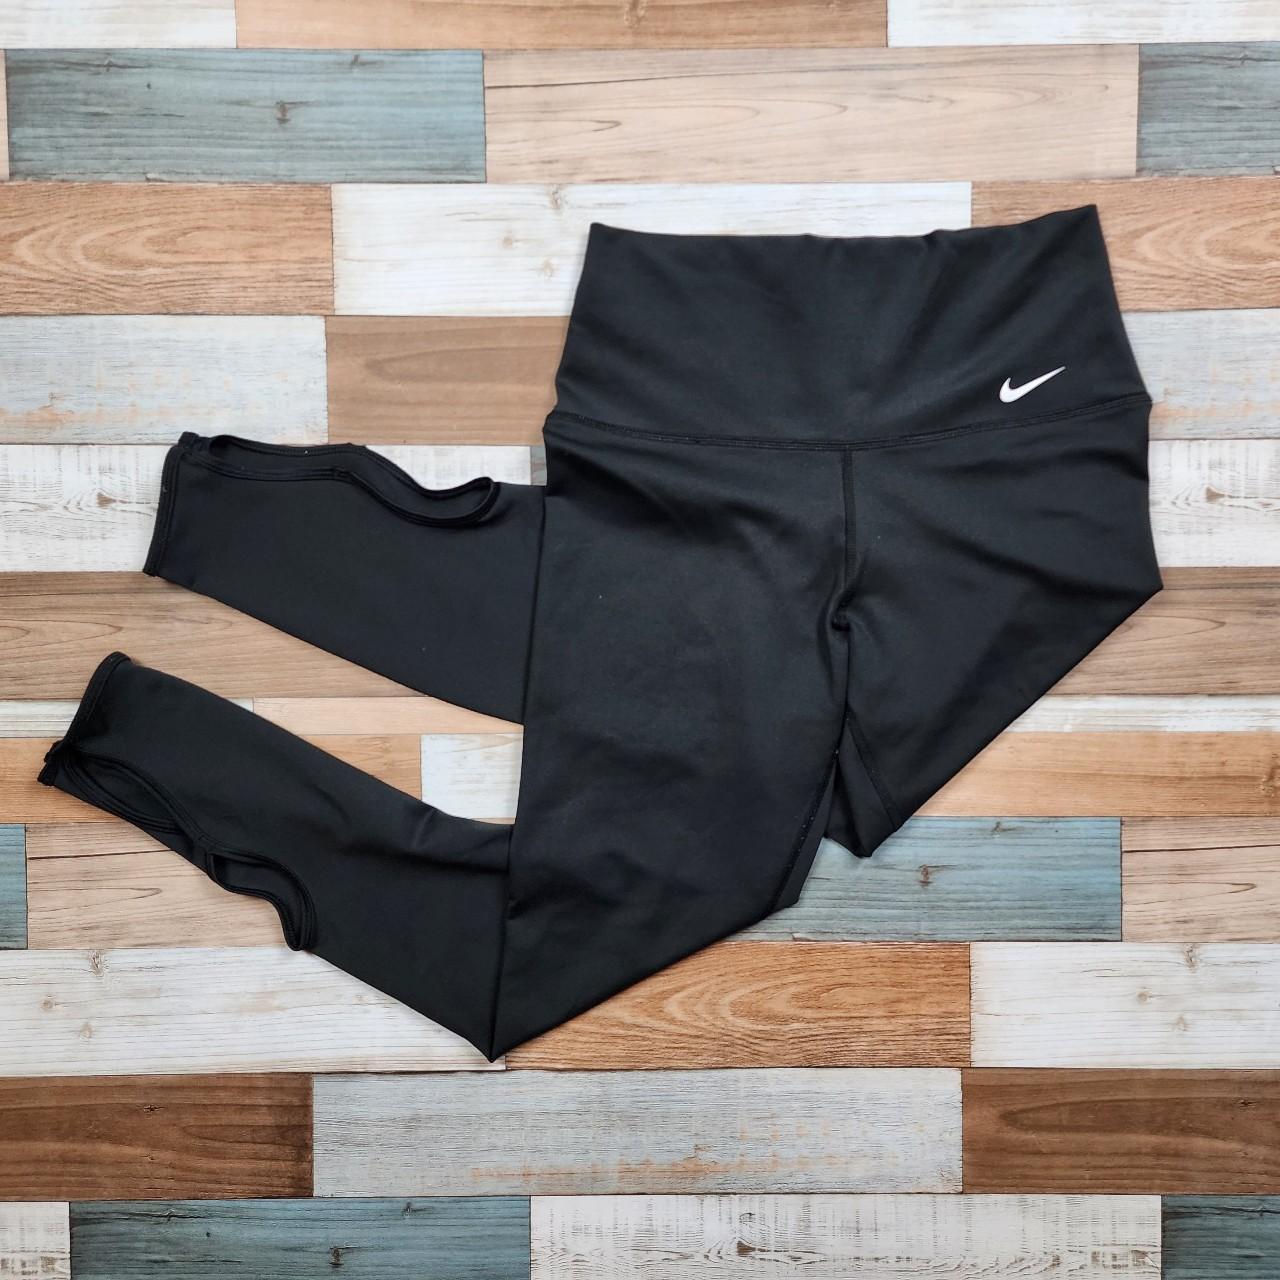 Nike Dri Fit tight Pants/leggings ankle Length Black Meduim